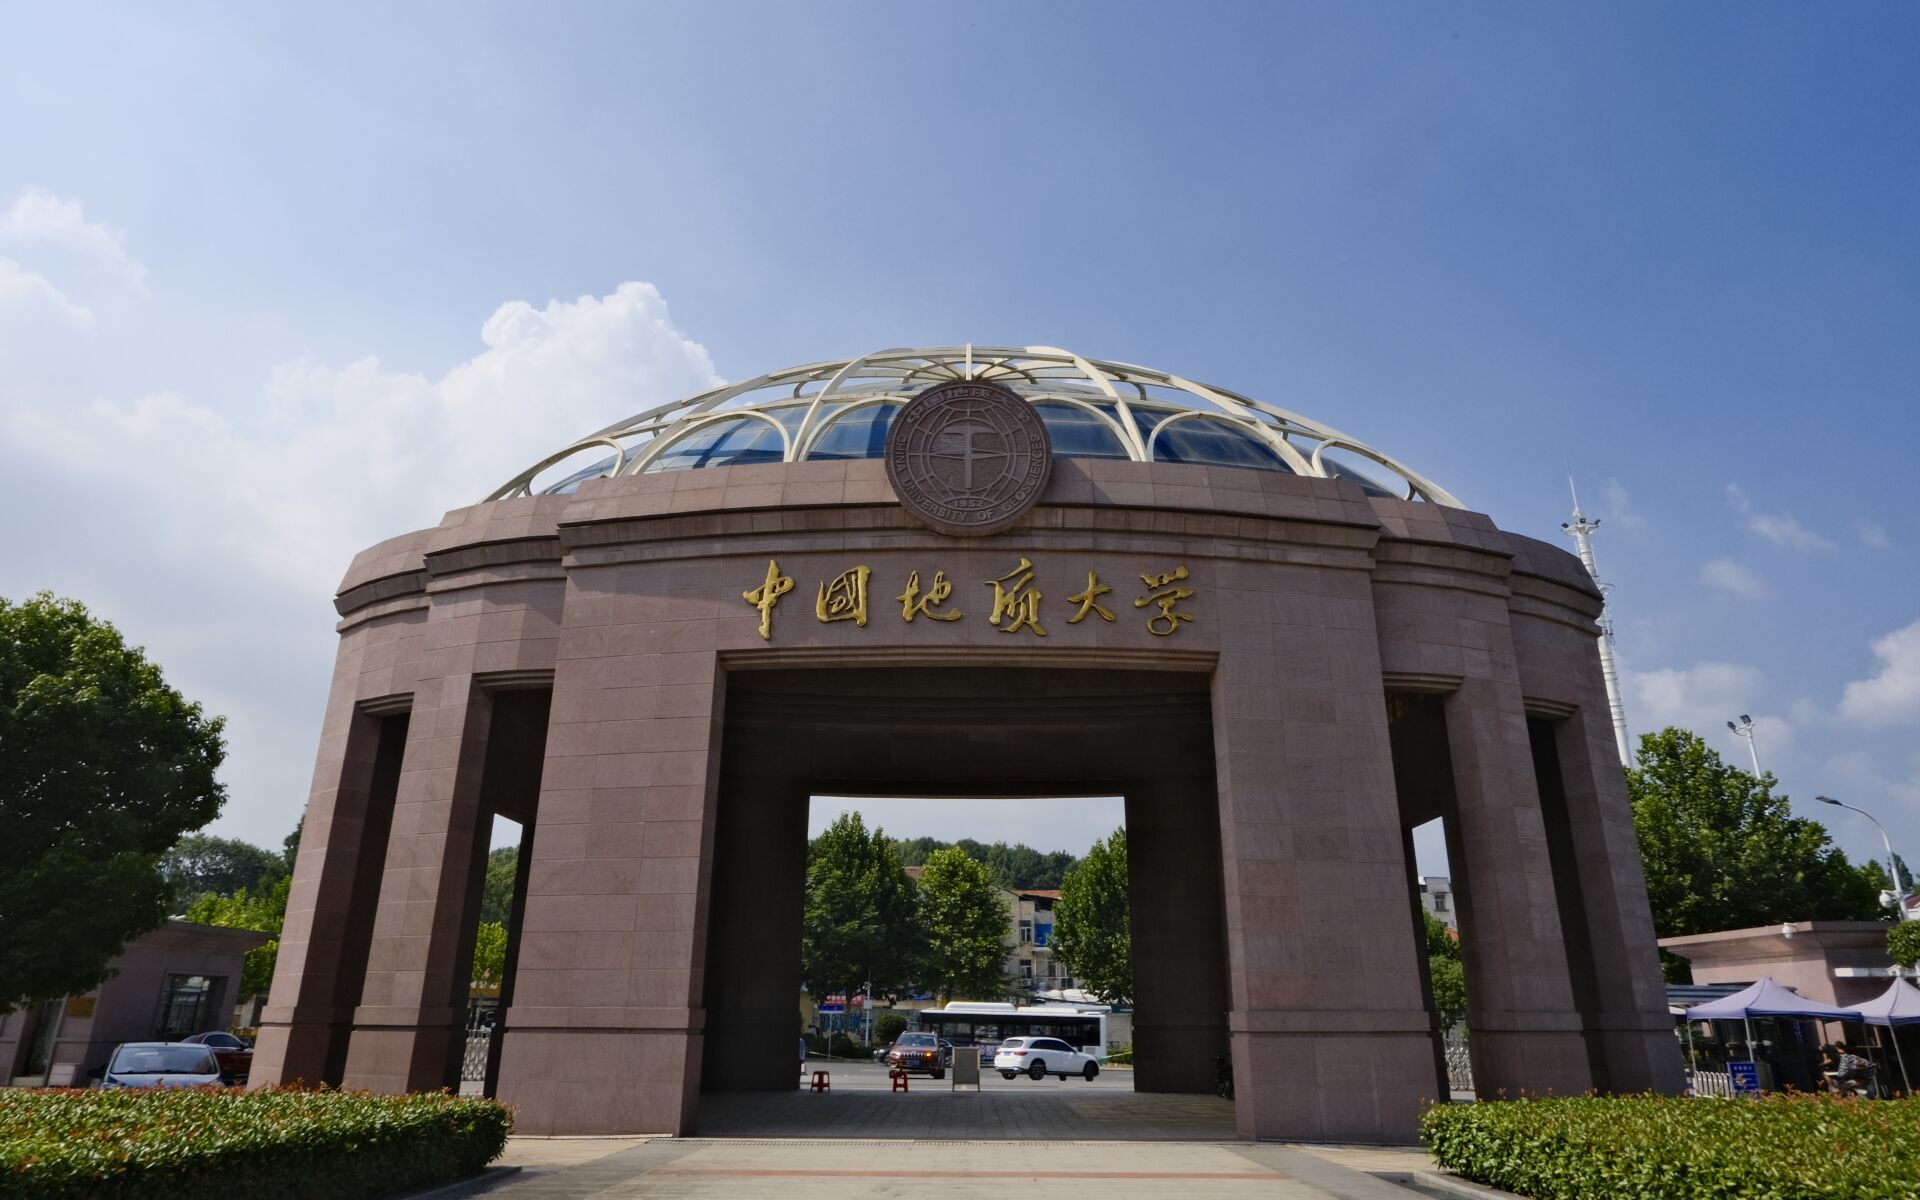 中国地址大学北京图片